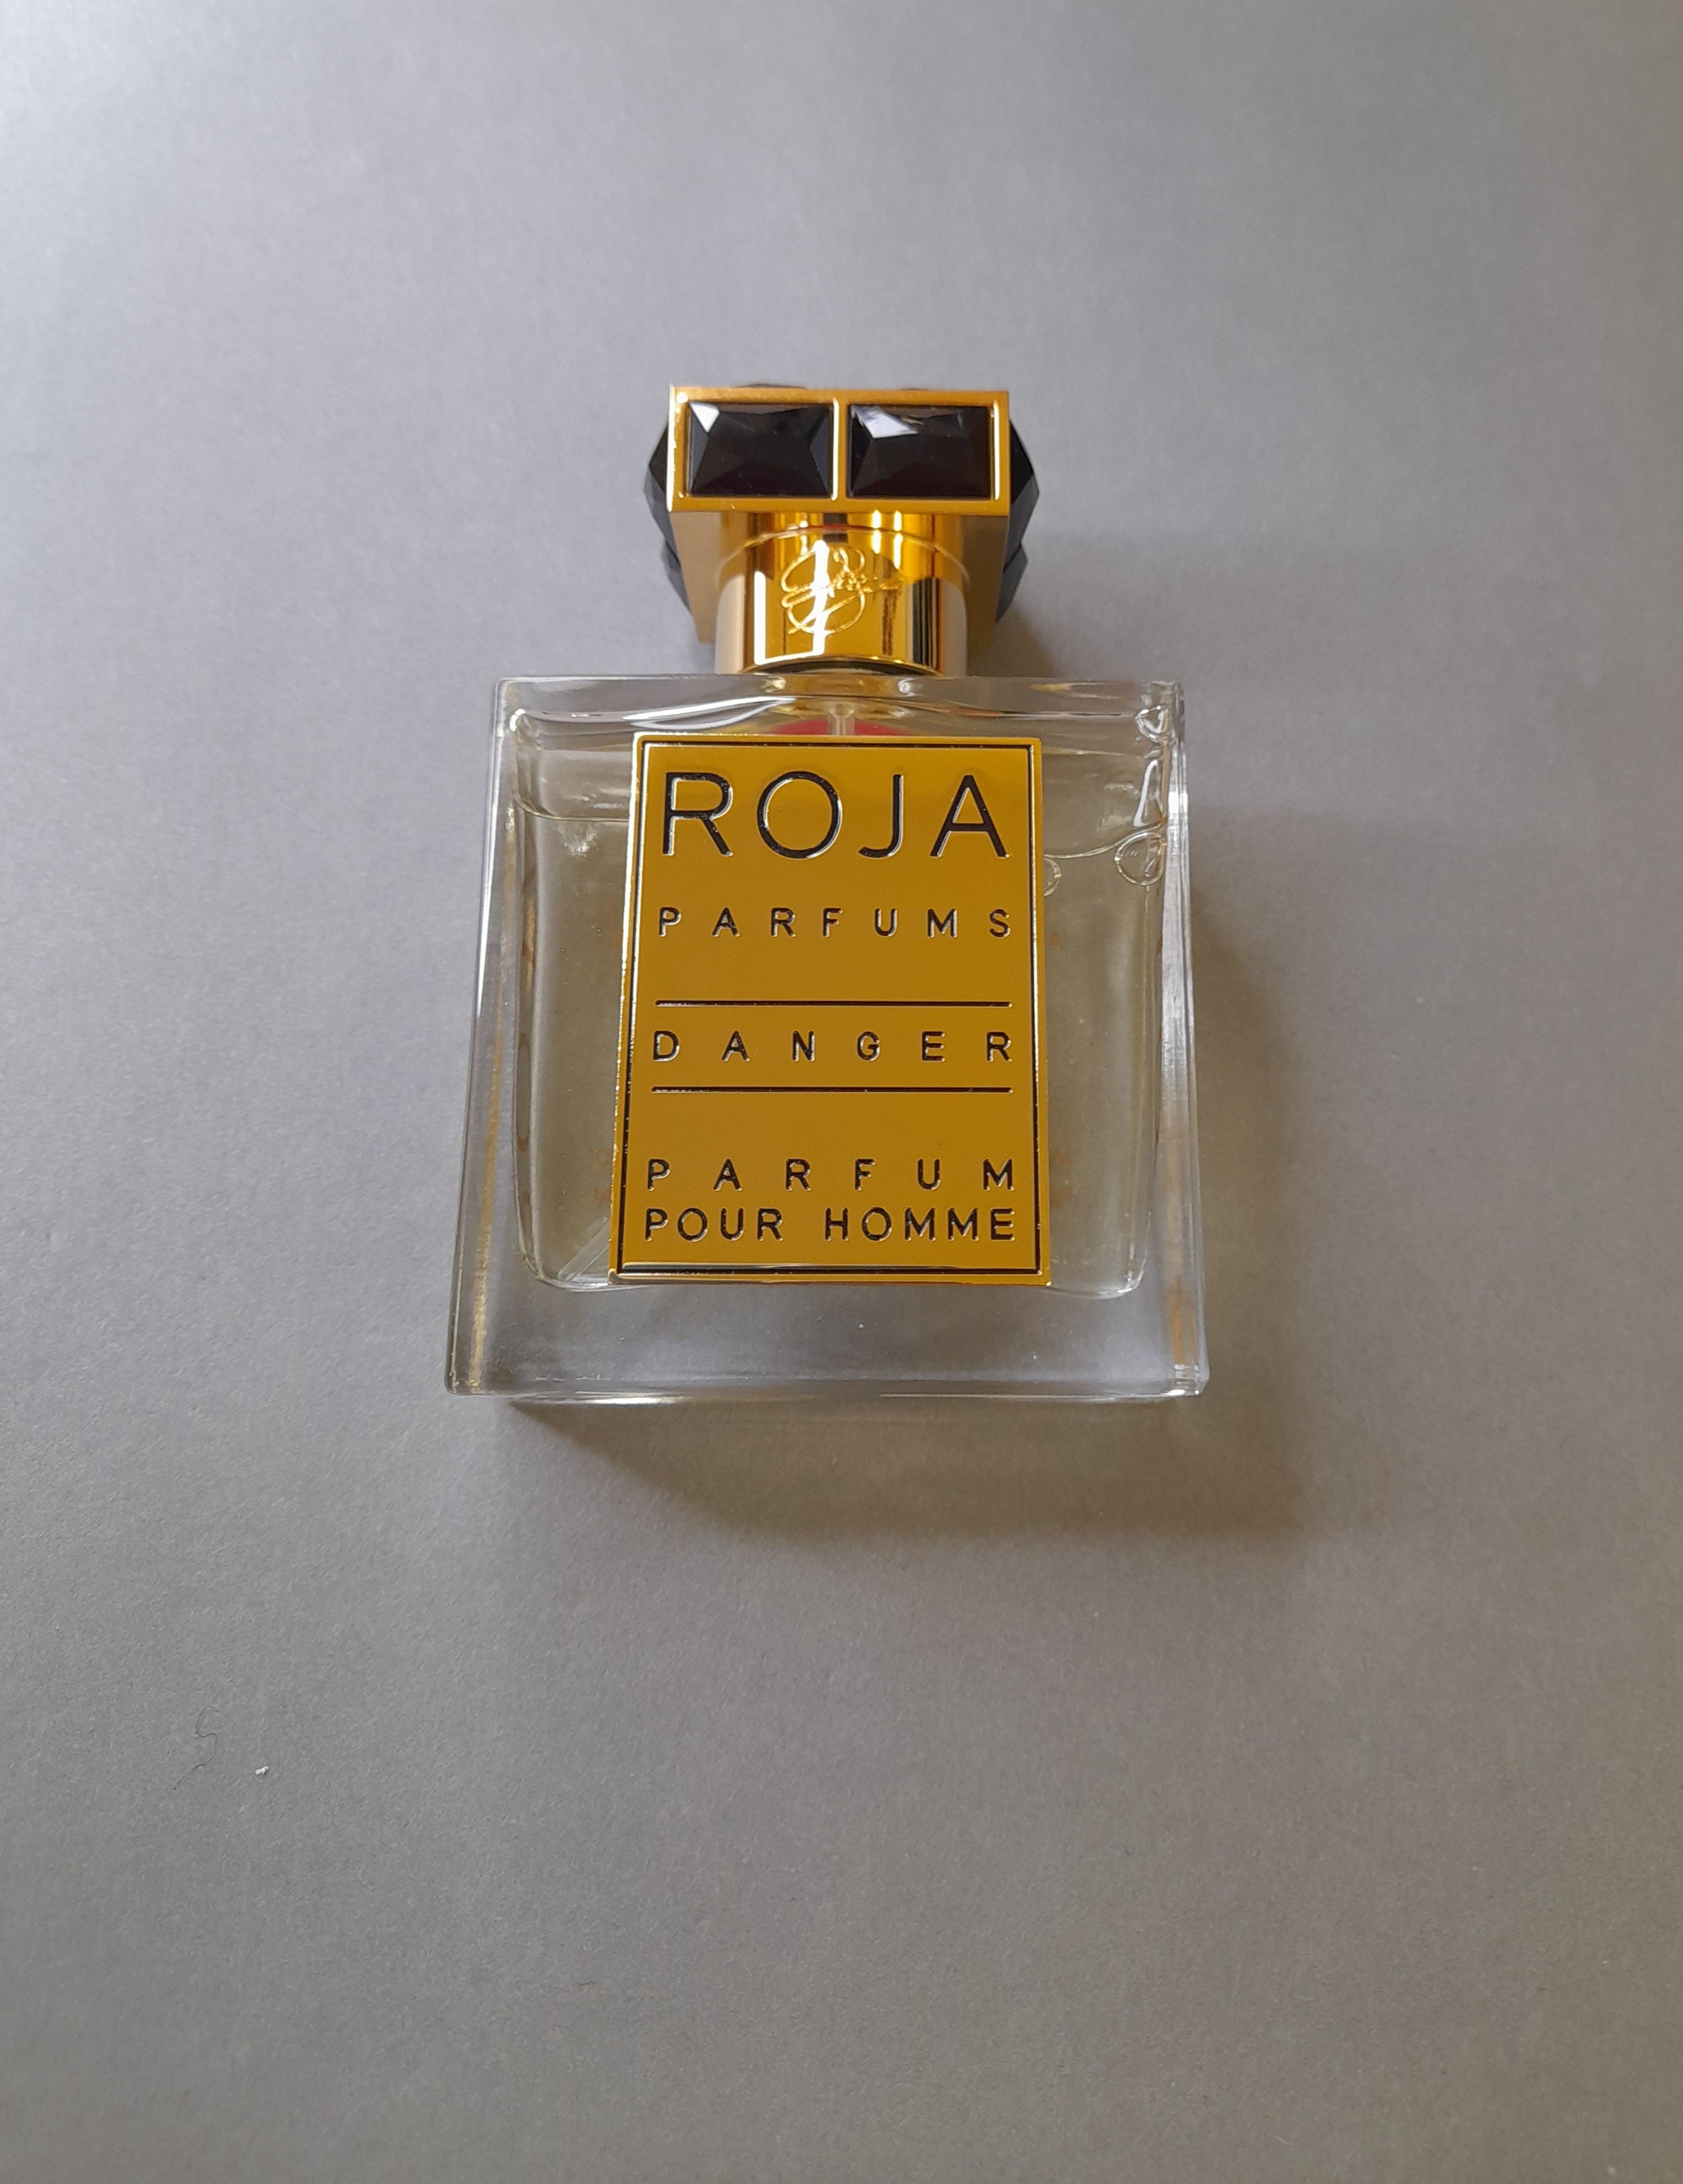 Roja Parfums Danger Parfum Pour Homme